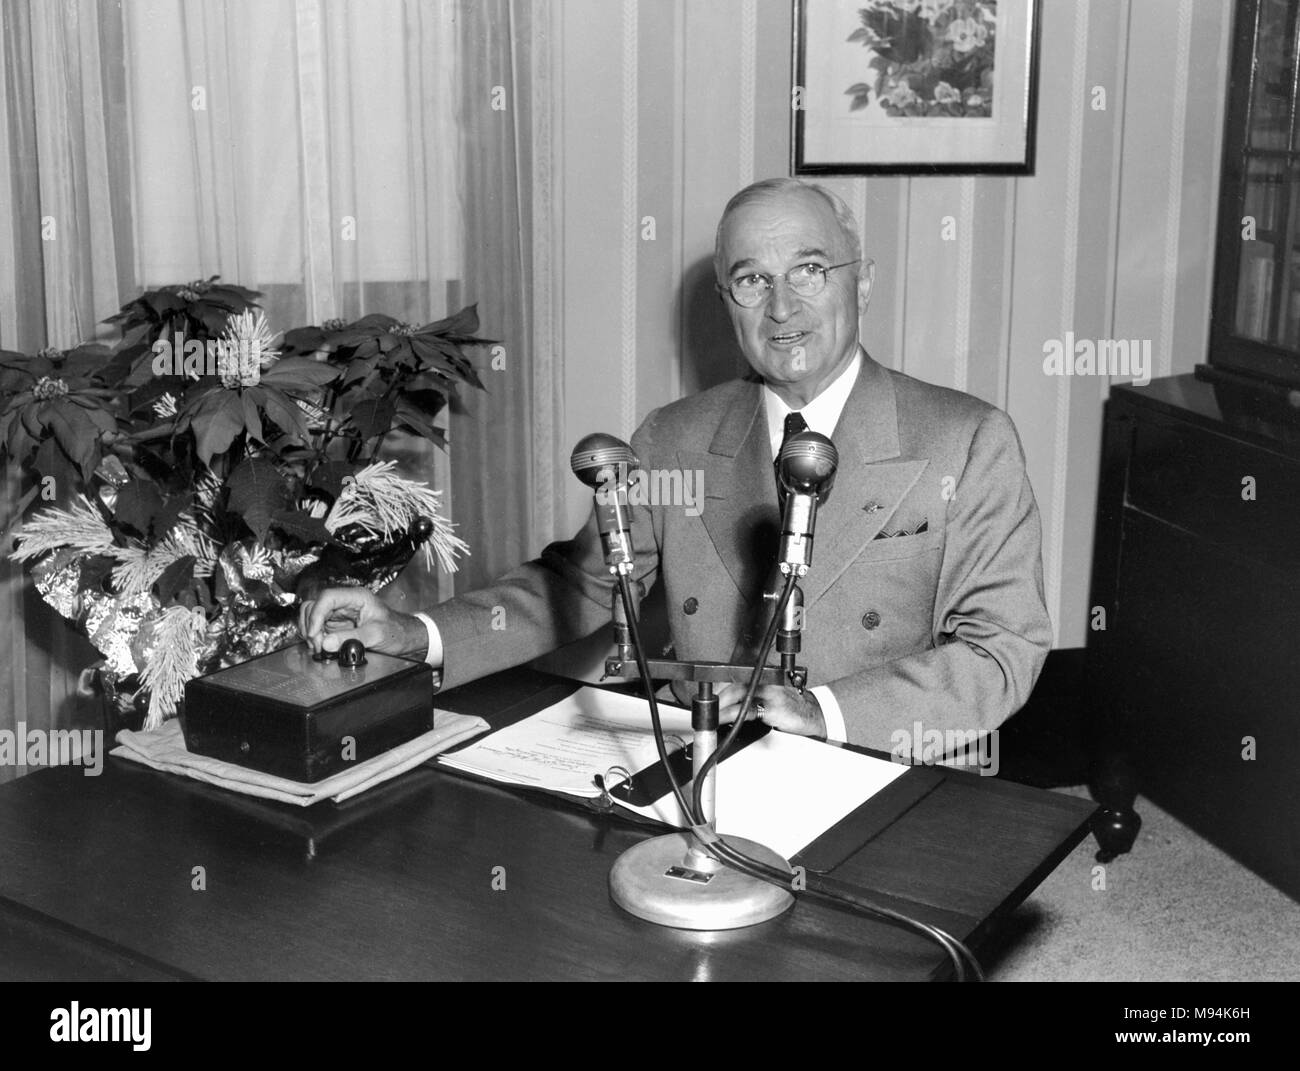 Le président Harry S. Truman traite de la nation dans une radio de Noël à partir de l'adresse de son domicile dans le Missouri en 1949. Banque D'Images